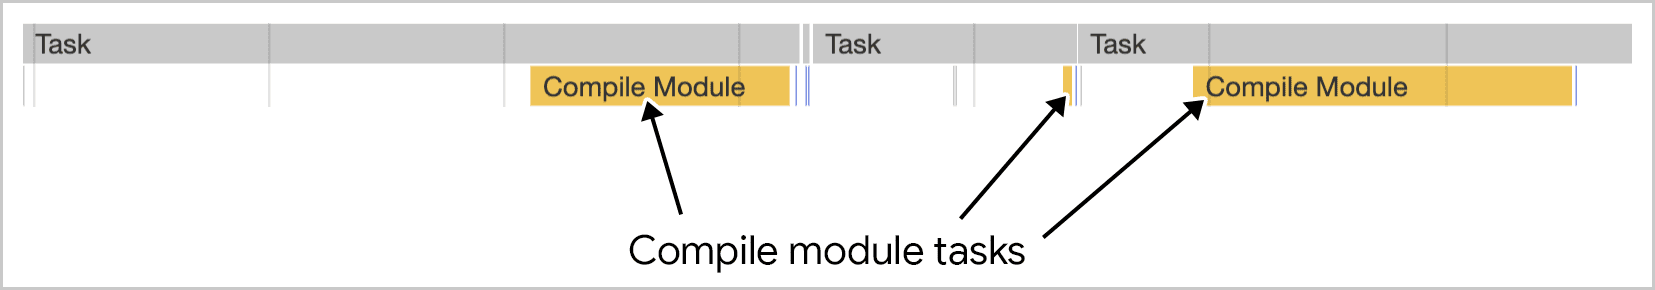 模組編譯作業可在 Chrome 開發人員工具中以視覺化方式呈現多項工作。